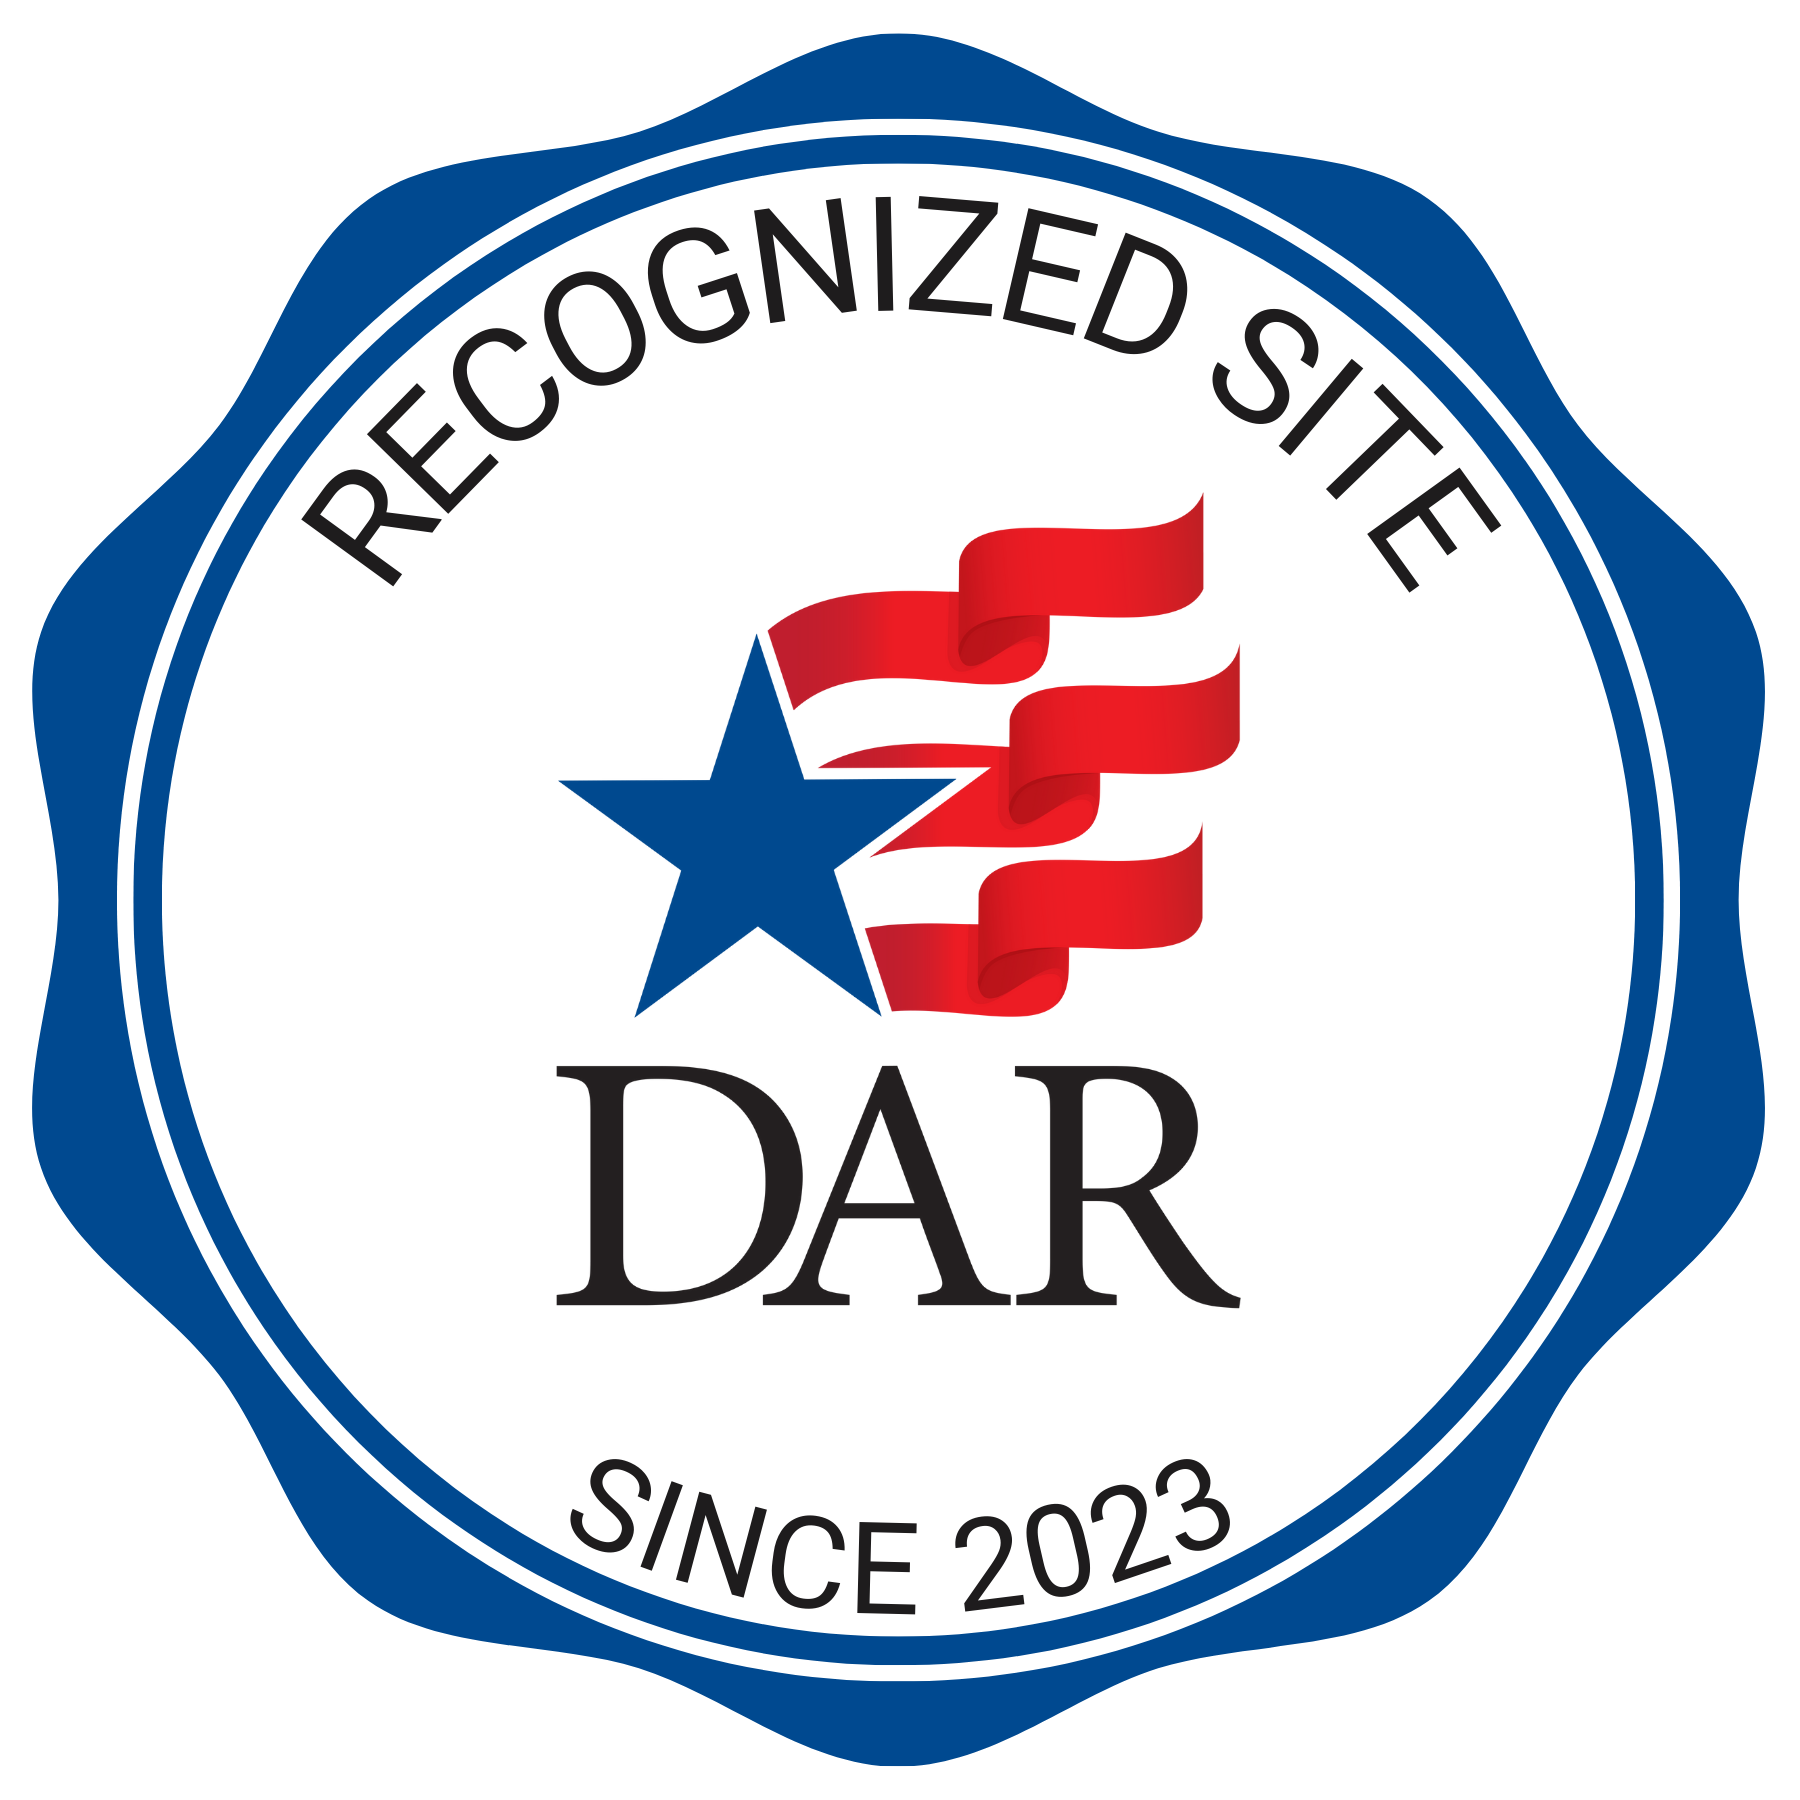 Recognized DAR site - 2023